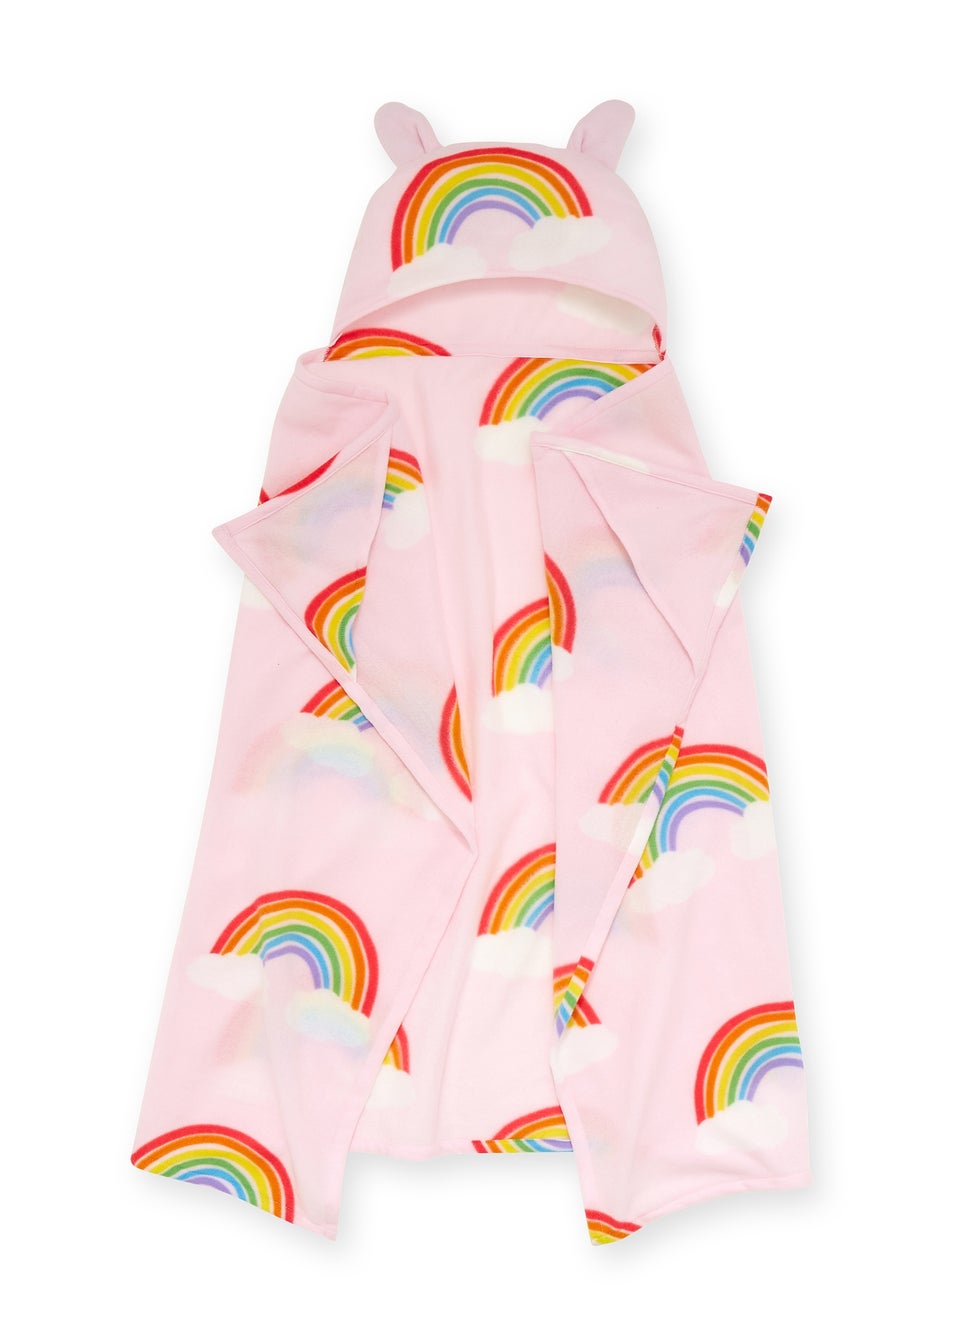 Catherine Lansfield Уютное флисовое одеяло с капюшоном Rainbow Hearts, розовый affenpinscher уютное флисовое одеяло премиум класса с 3d принтом шерпа одеяло на кровать домашний текстиль